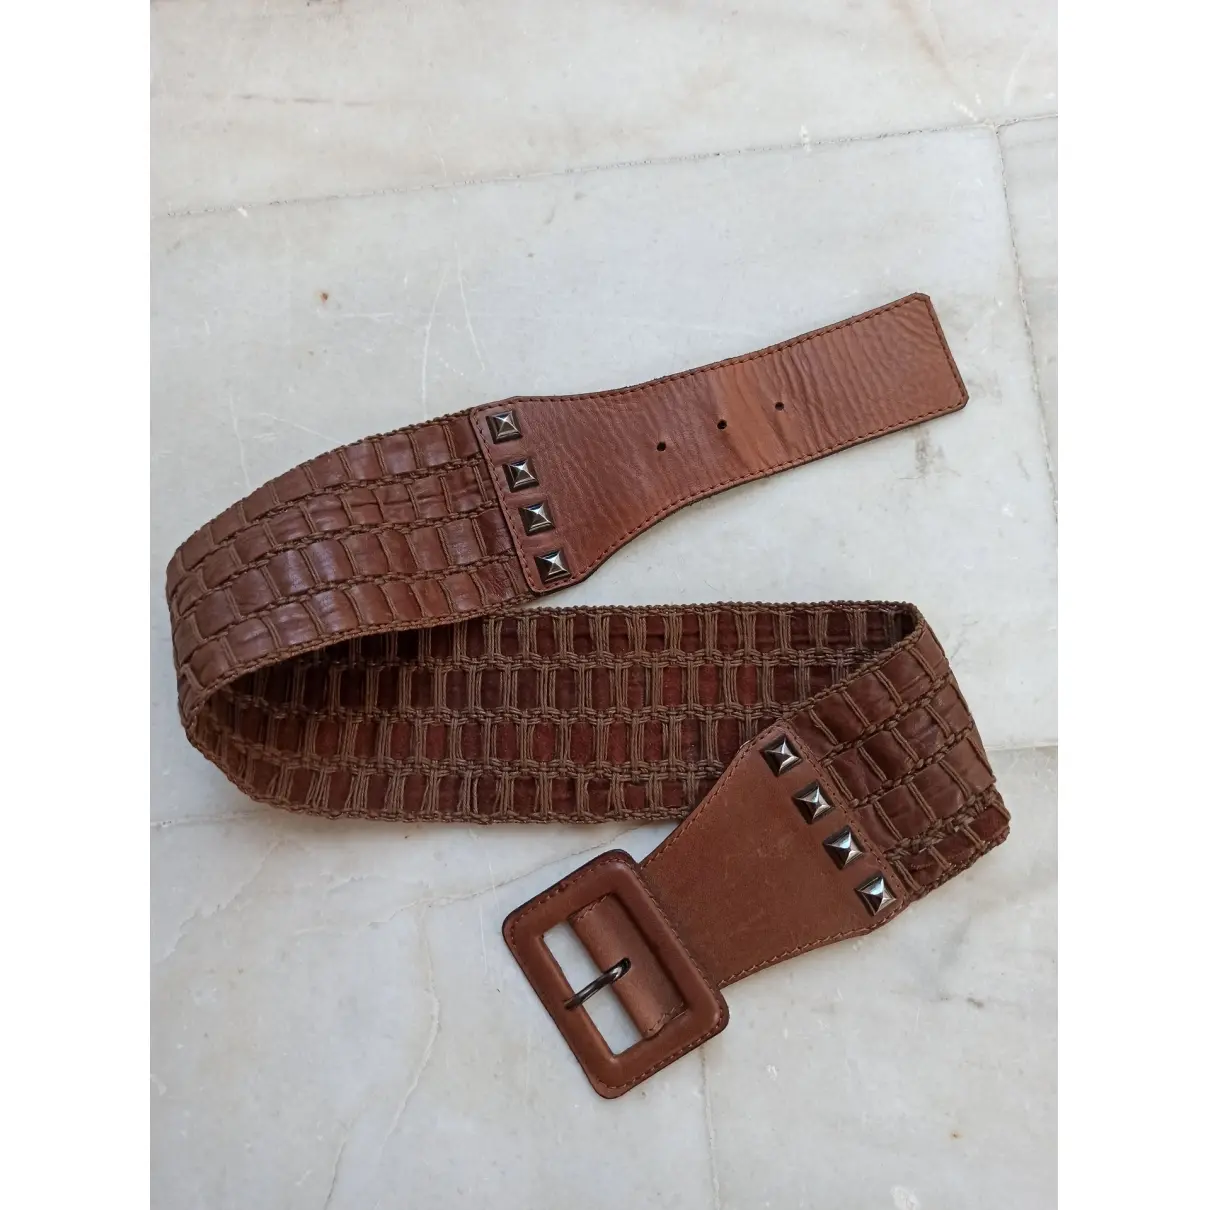 Yves Saint Laurent Leather belt for sale - Vintage